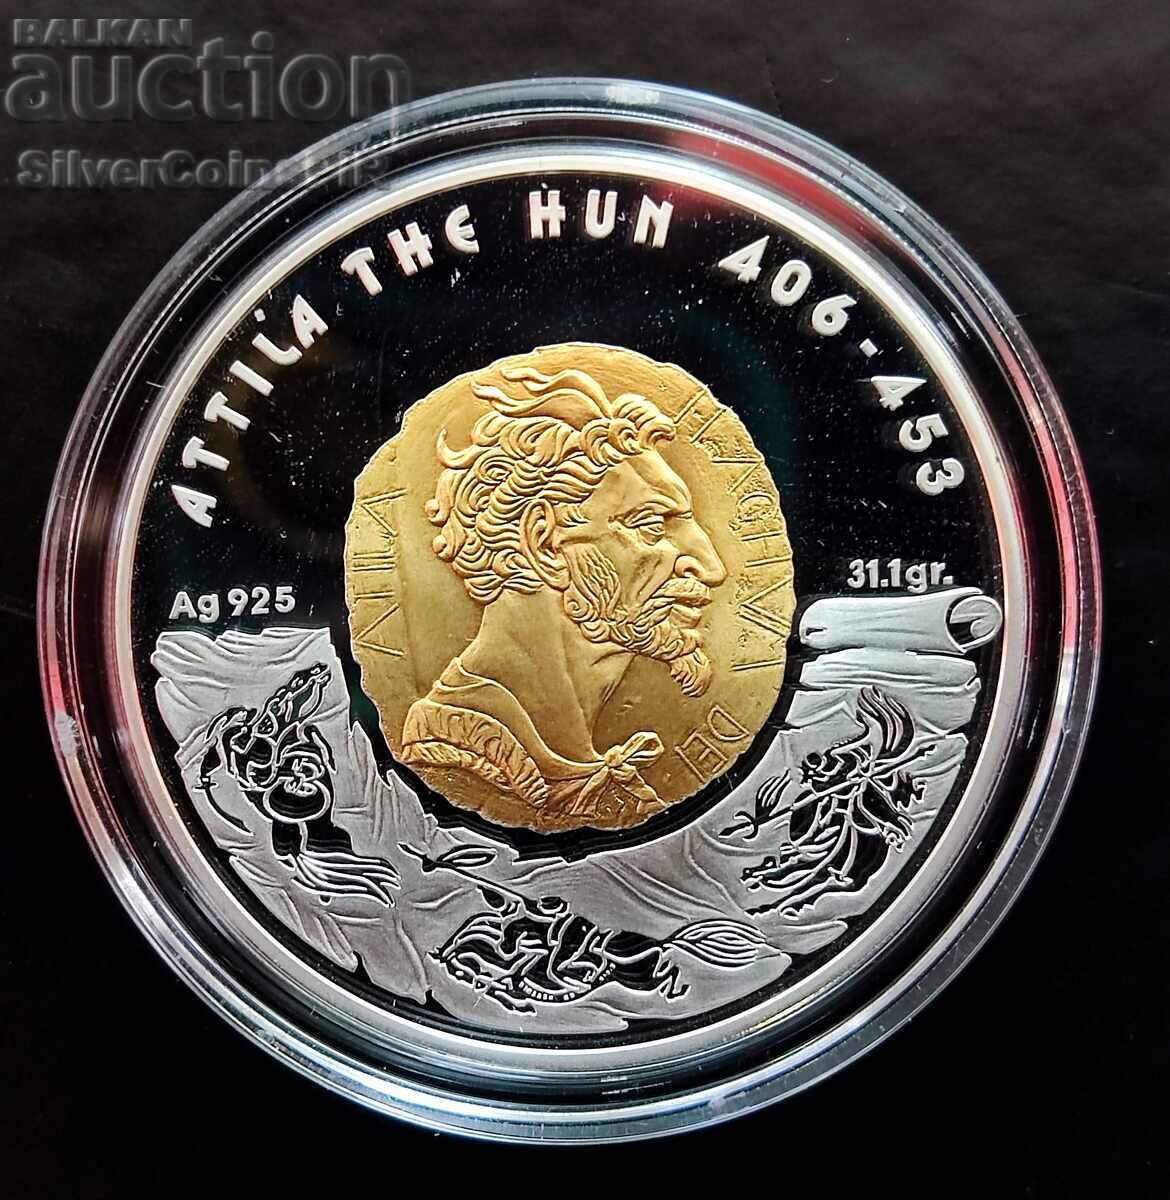 Silver 1 oz Attila the Hun 2009 Kazakhstan 100 Tenge